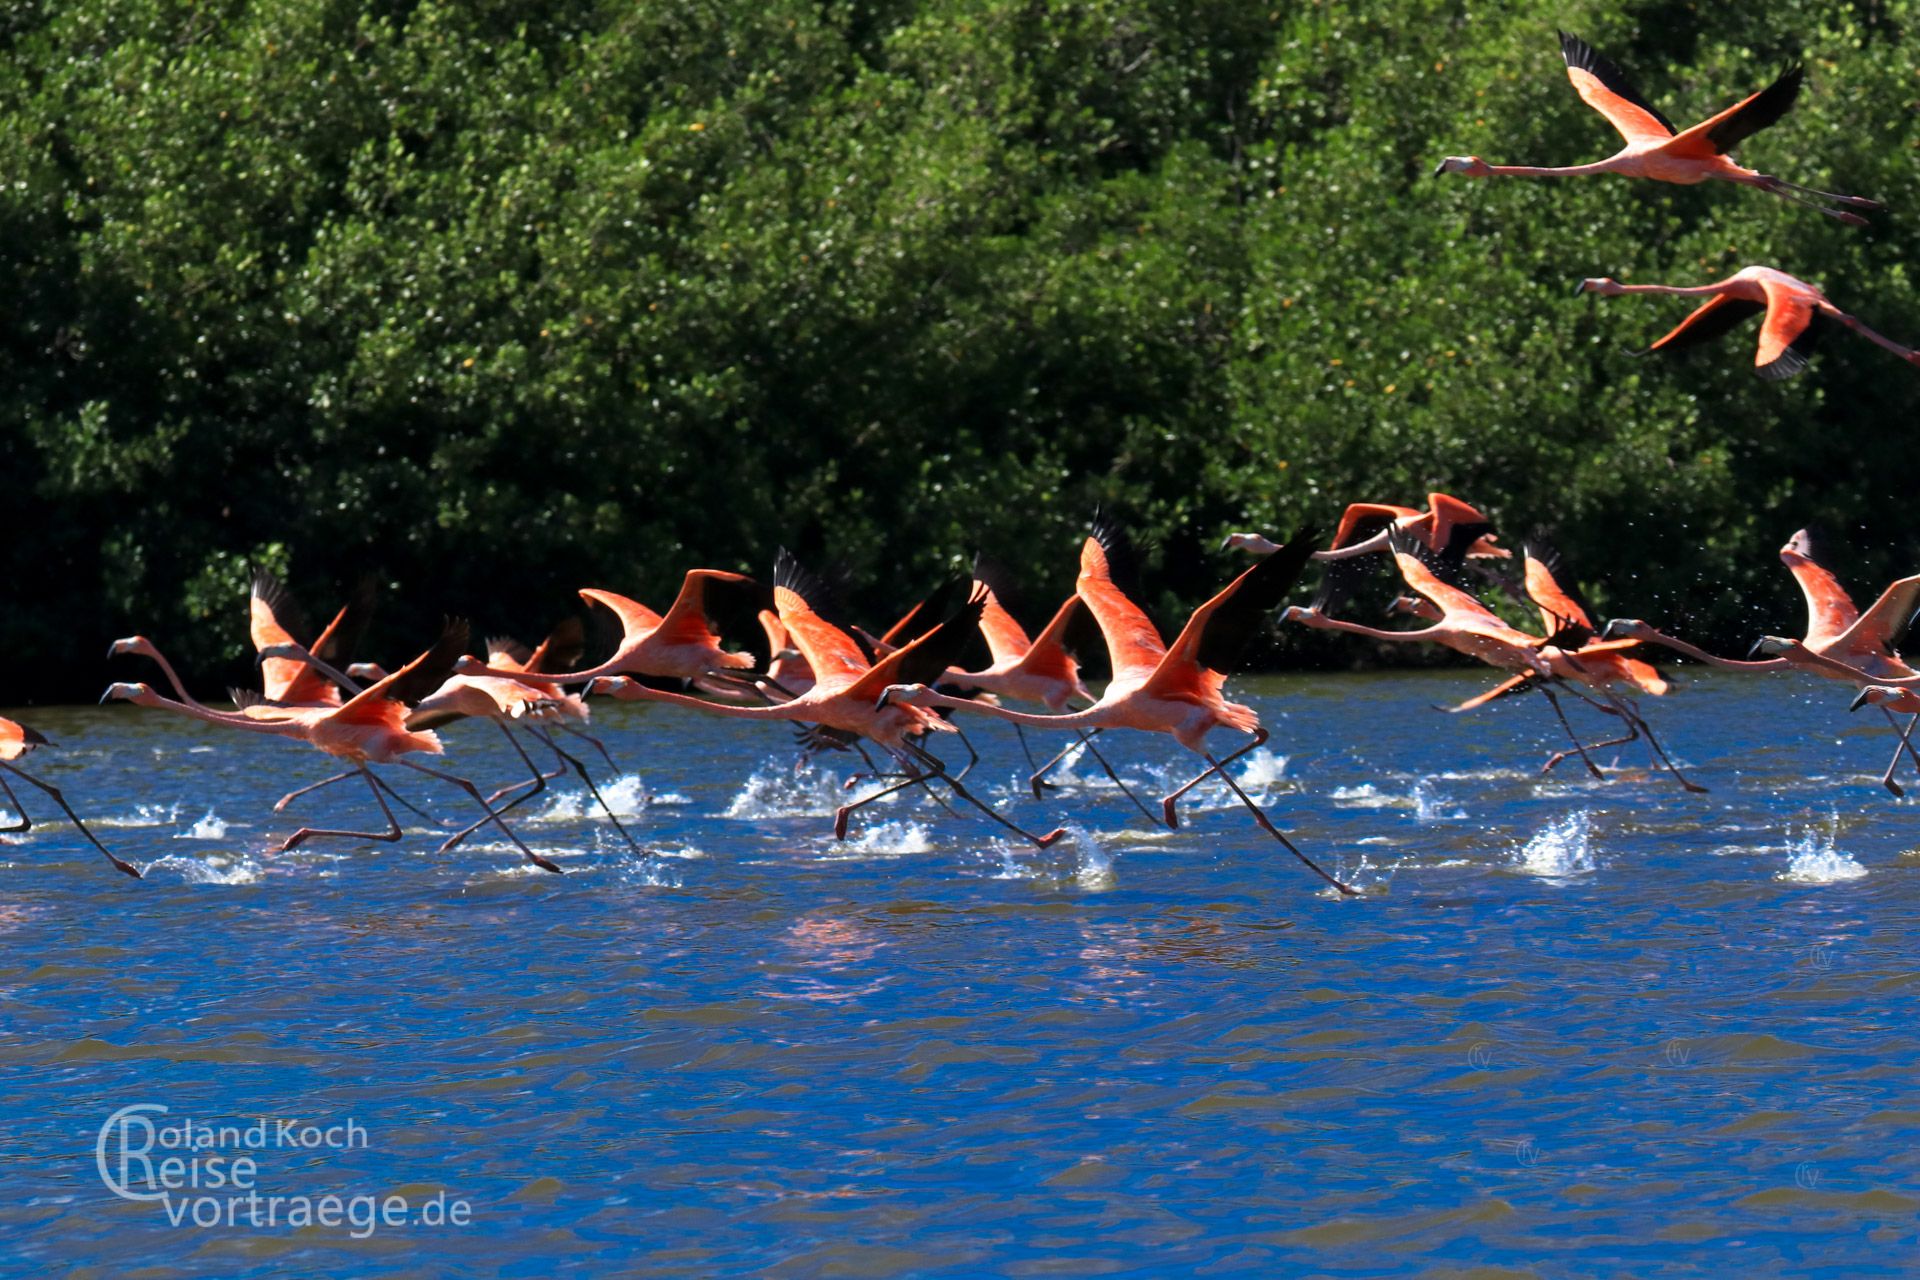 Kuba, Cuba, Cienfuegos - Flamingos in der Laguna de Guanaroca